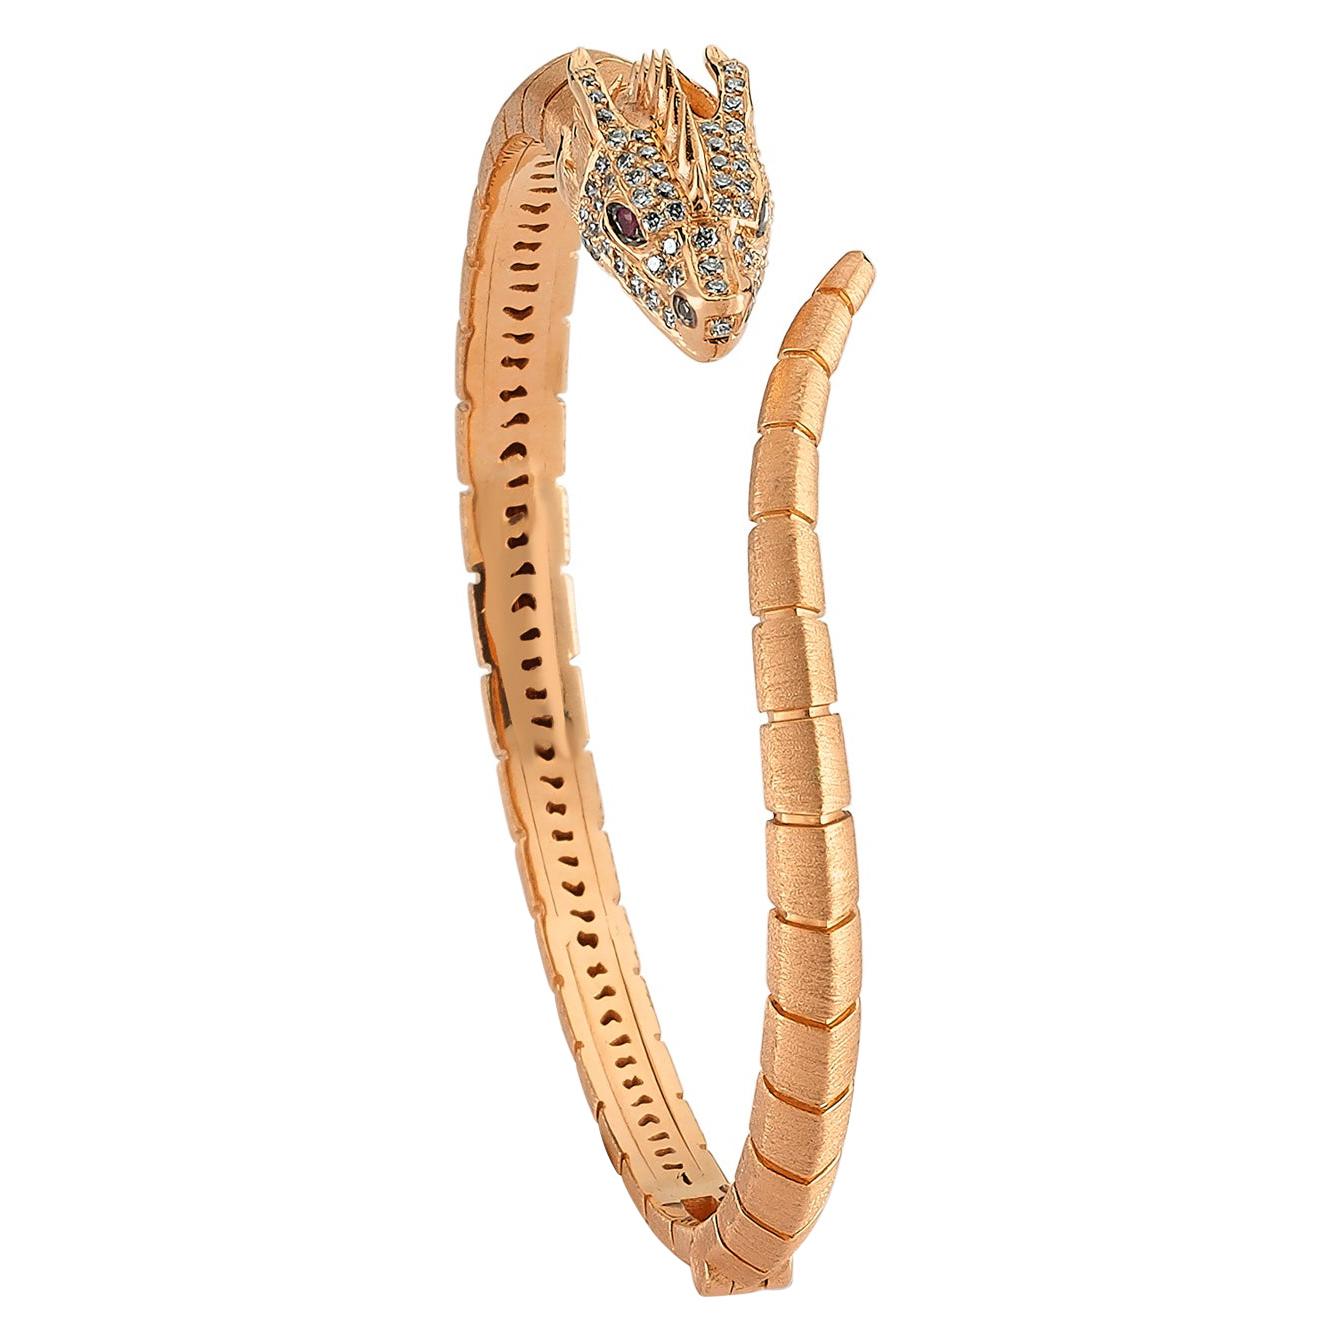 Selda Jewellery Ananta Sesha Bracelet in 14K Rose Gold with Black, White Diamond